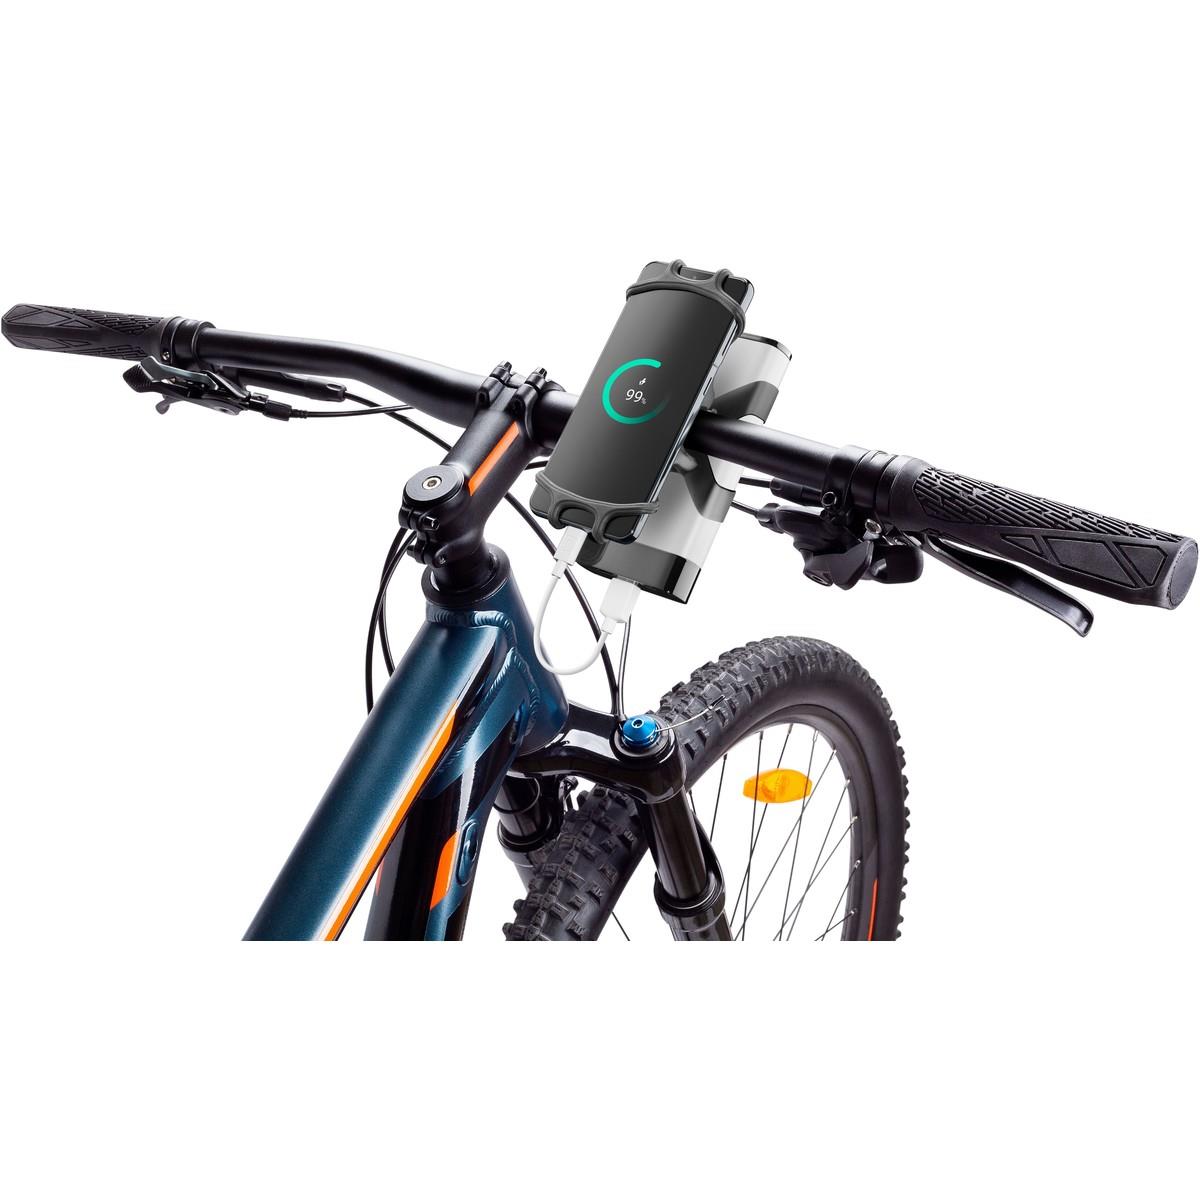 Fahrradhalterung RIDER mit Powerbank-Halterung für Smartphones zwischen 4 und 6,7 Zoll